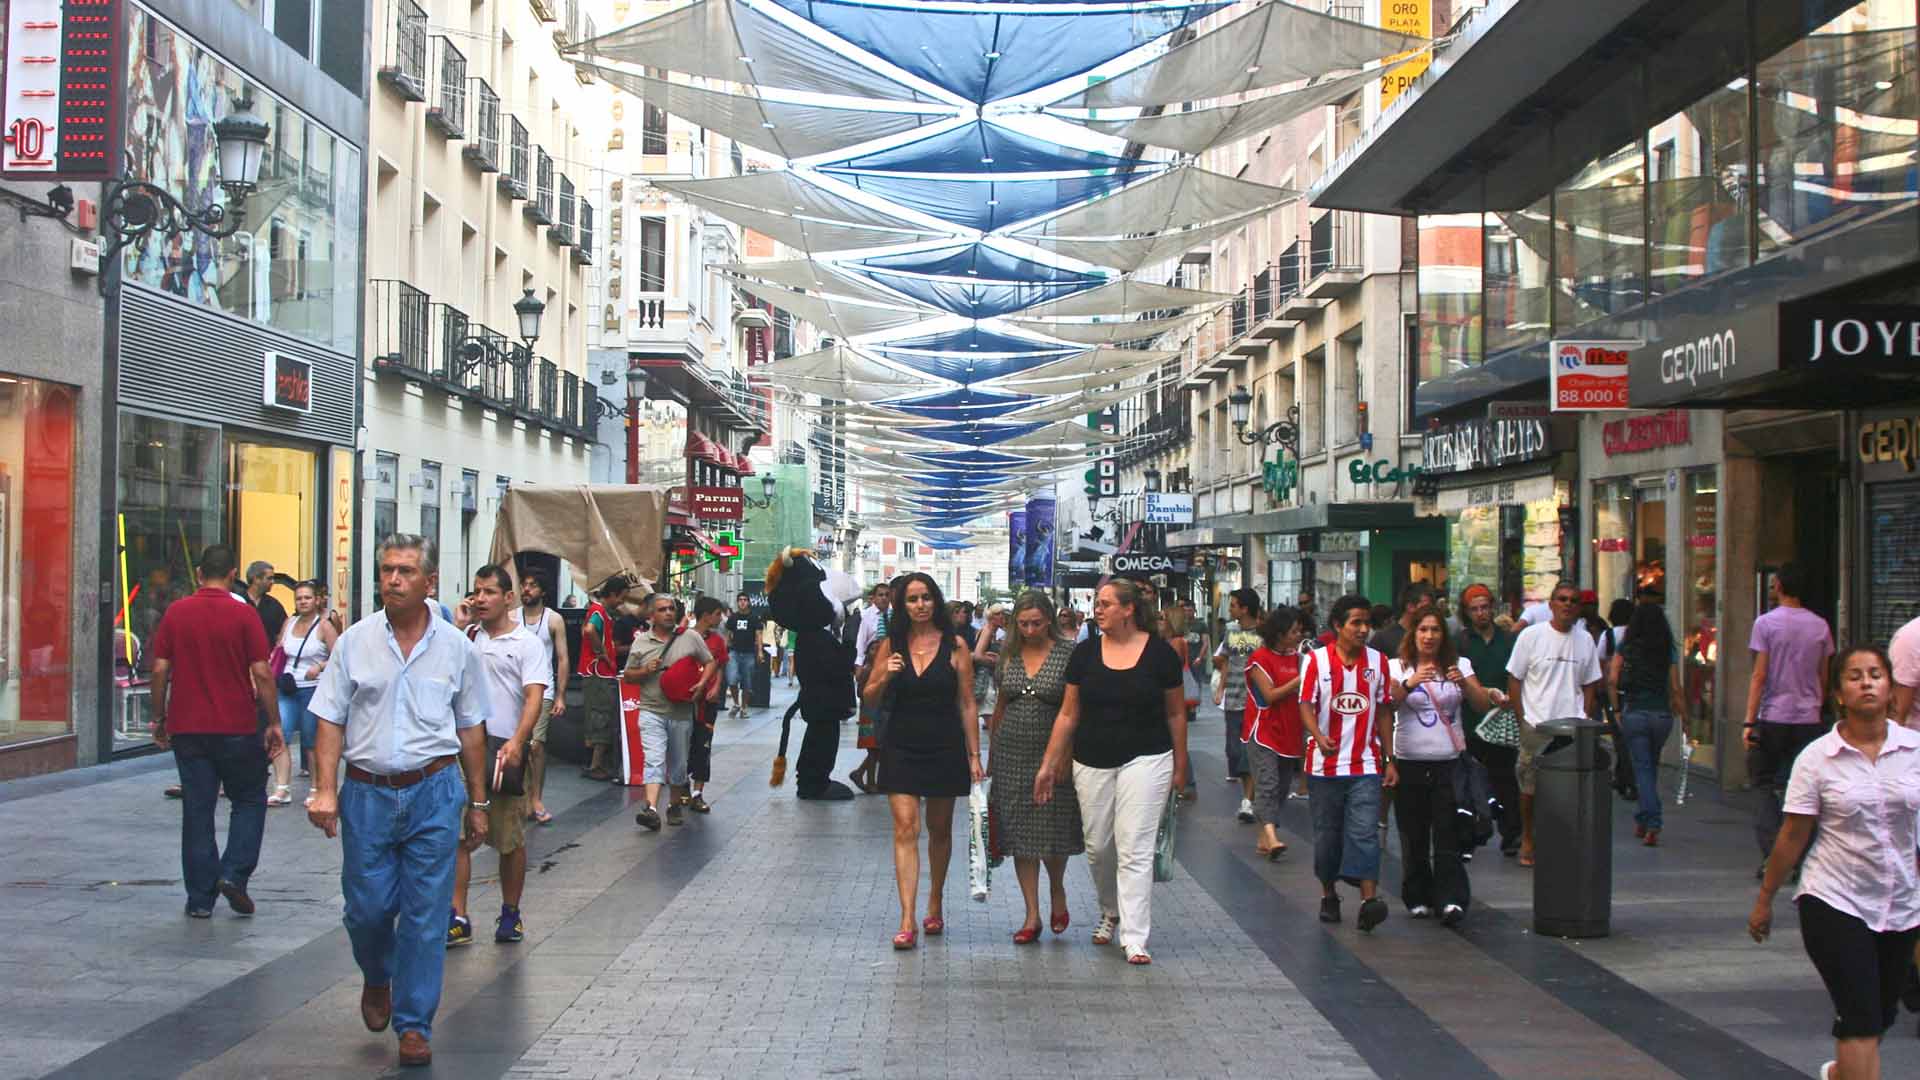 Shops and shopping in great. Мадрид торговая улица. Барселона улица с бутиками. Мадрид улицы и торговые центры. Испания люди на улице.